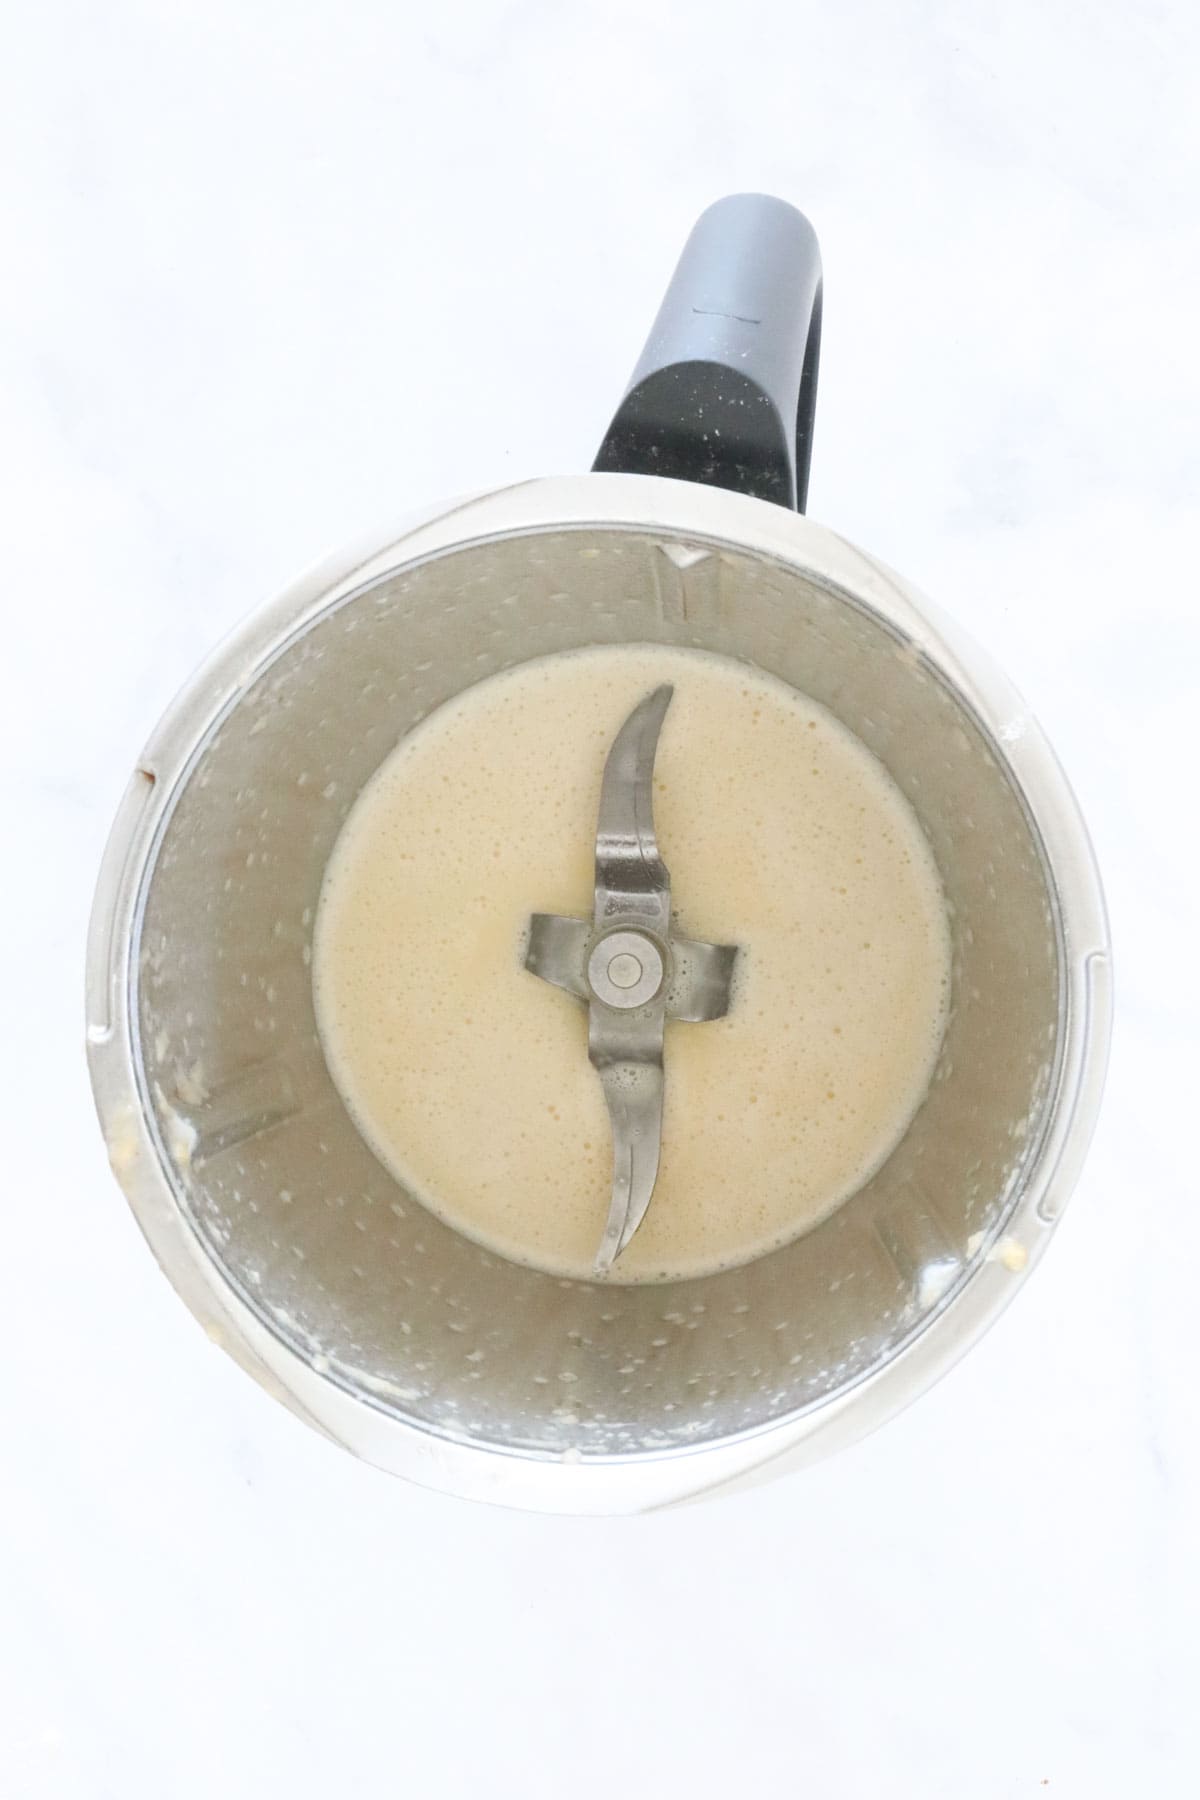 Creamy liquid in a Thermomix.